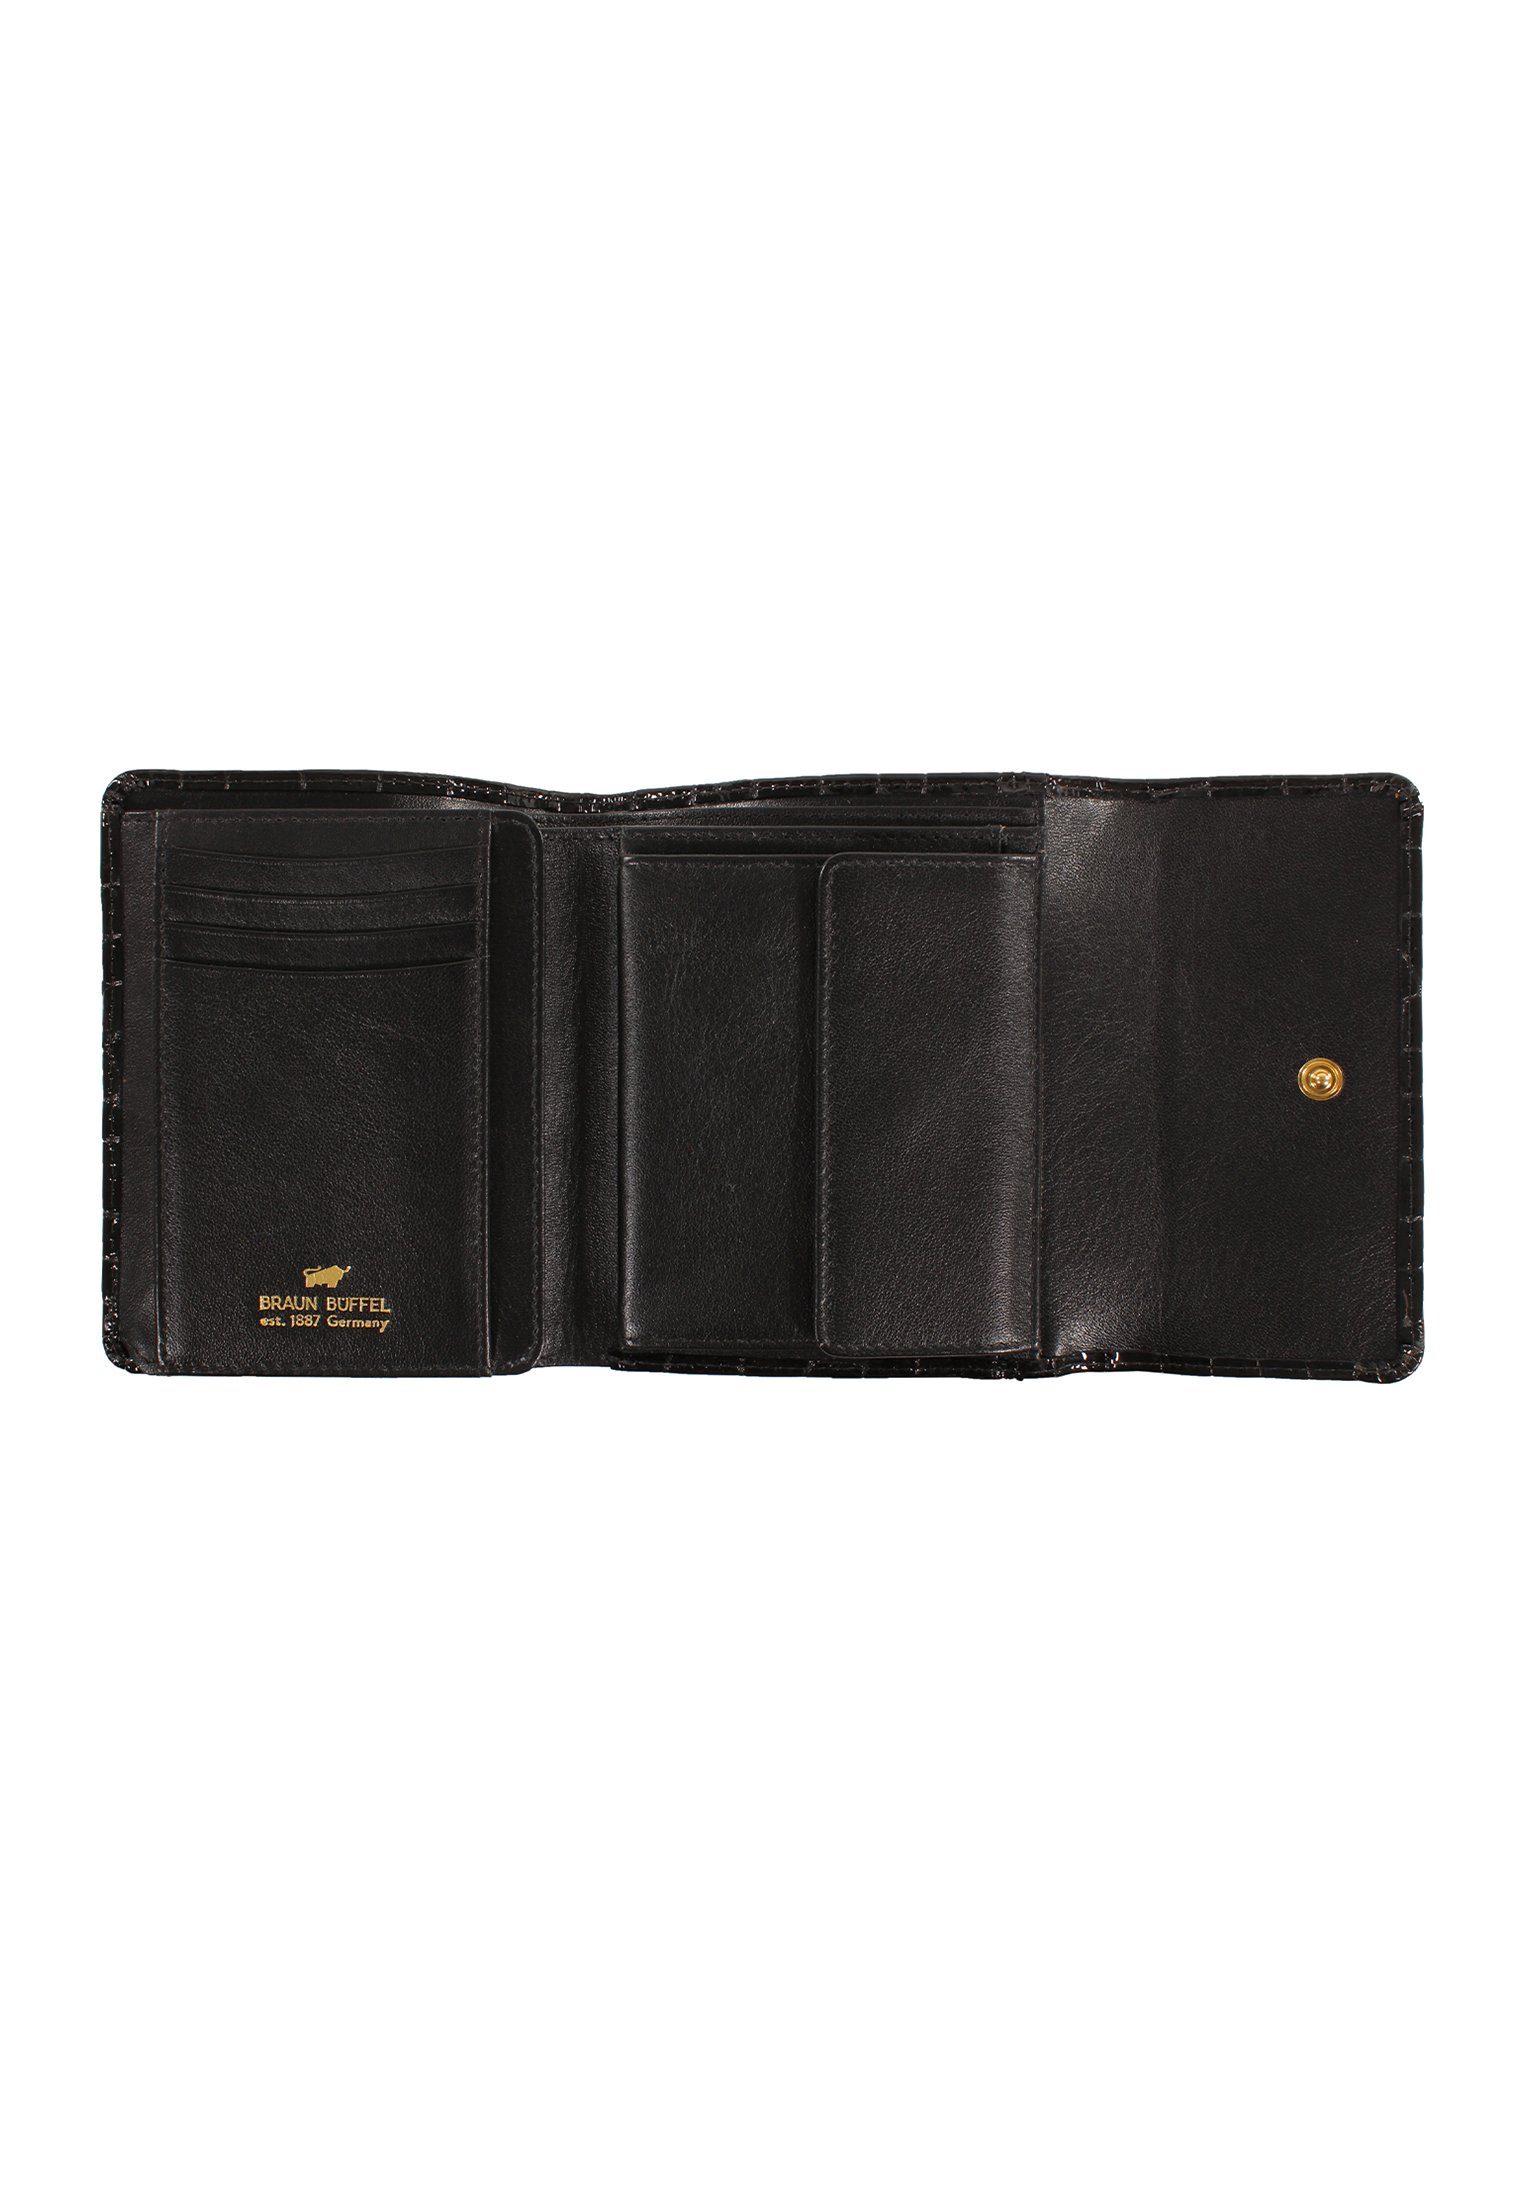 Geldbörse schwarz mit VERONA Büffel 8CS, Braun Glanzeffekt M